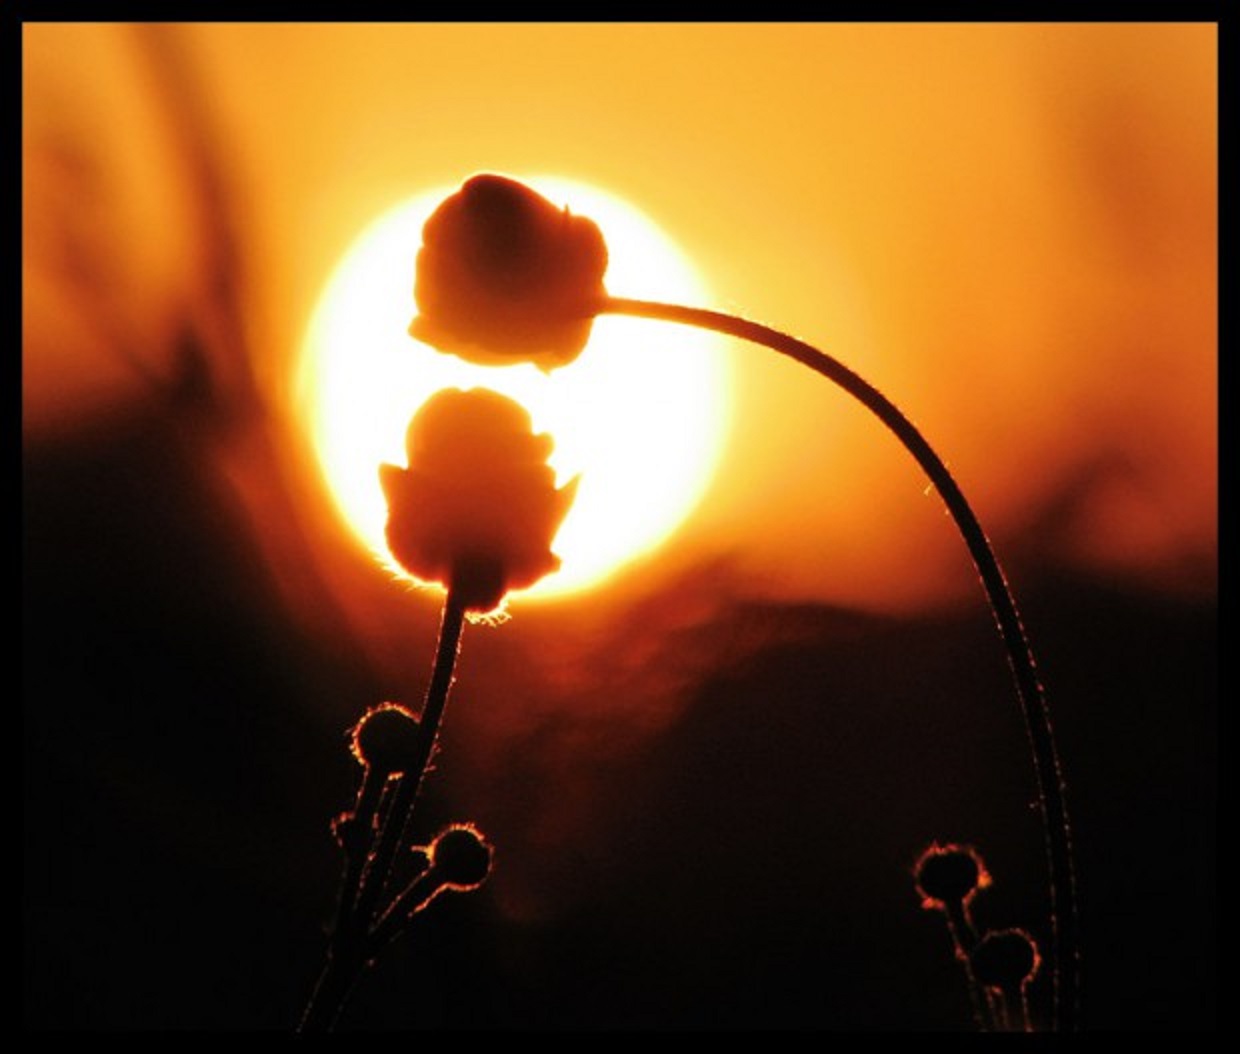 Солнце в жизни растений